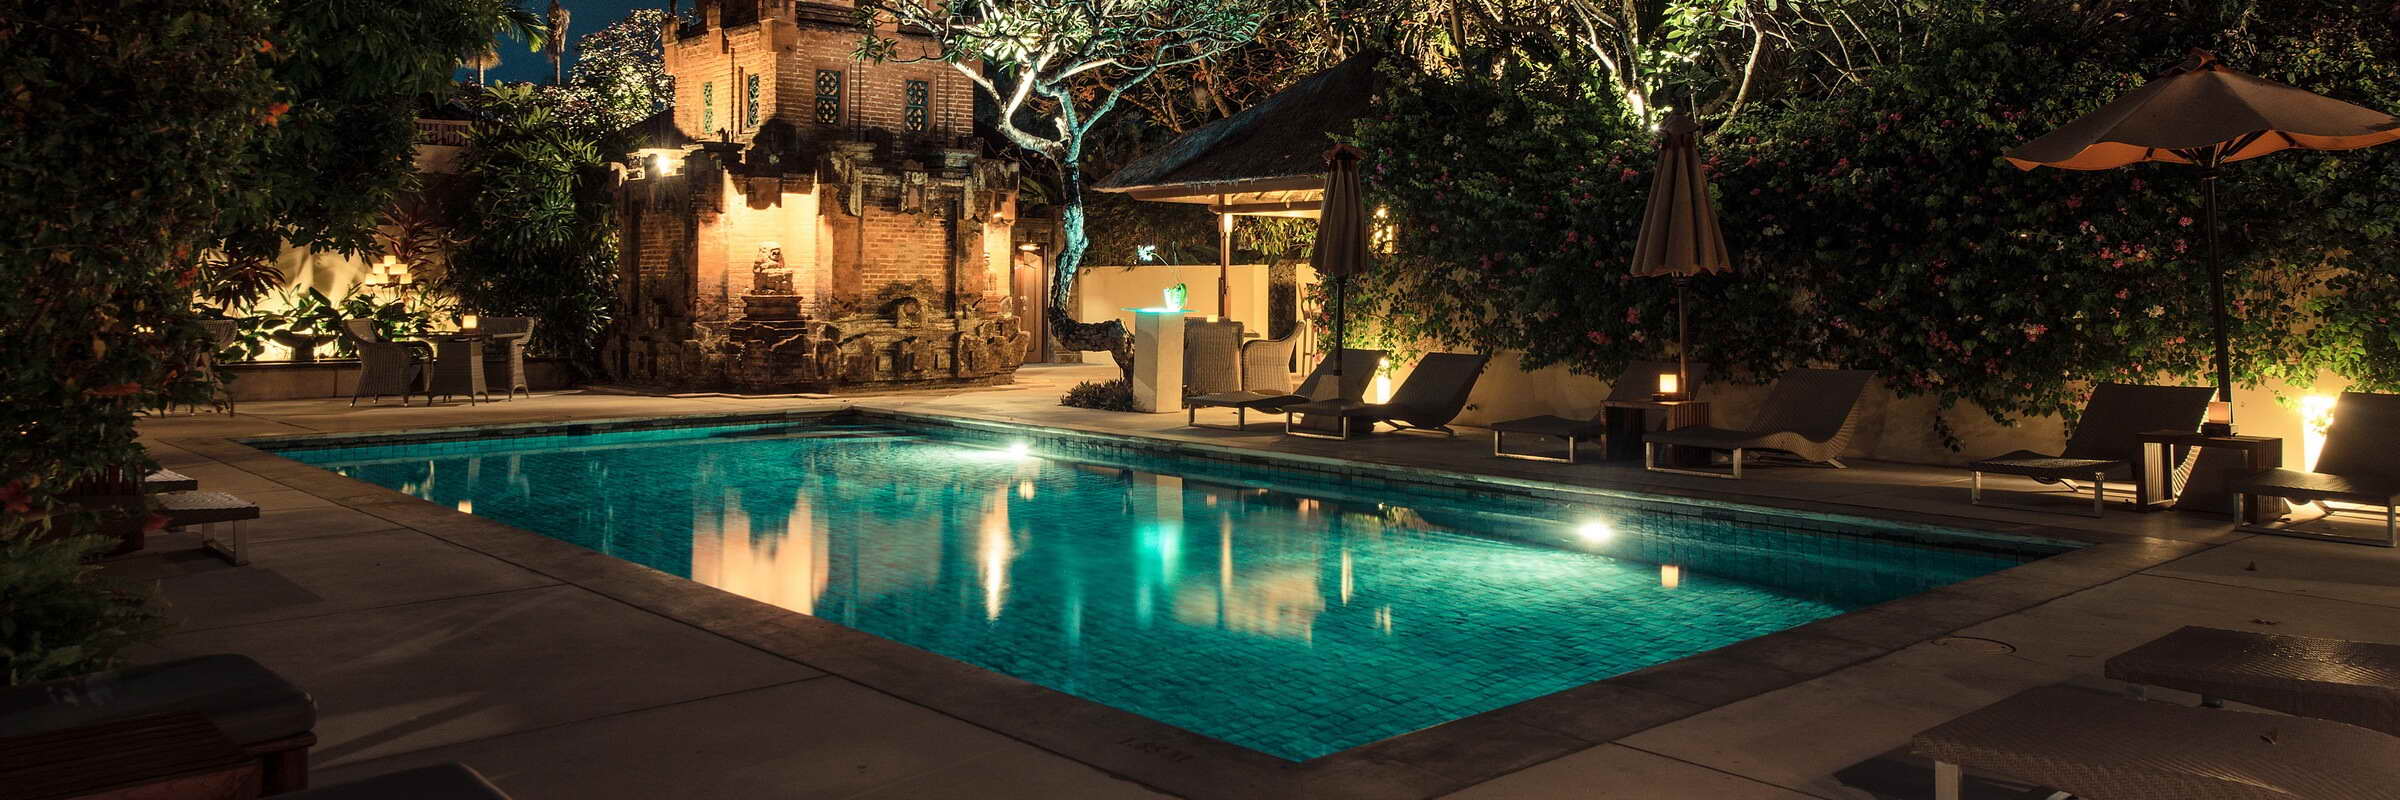 Ein Swimmingpool mit angrenzender Poolbar sorgt für Abkühlung im The Pavilions Bali.